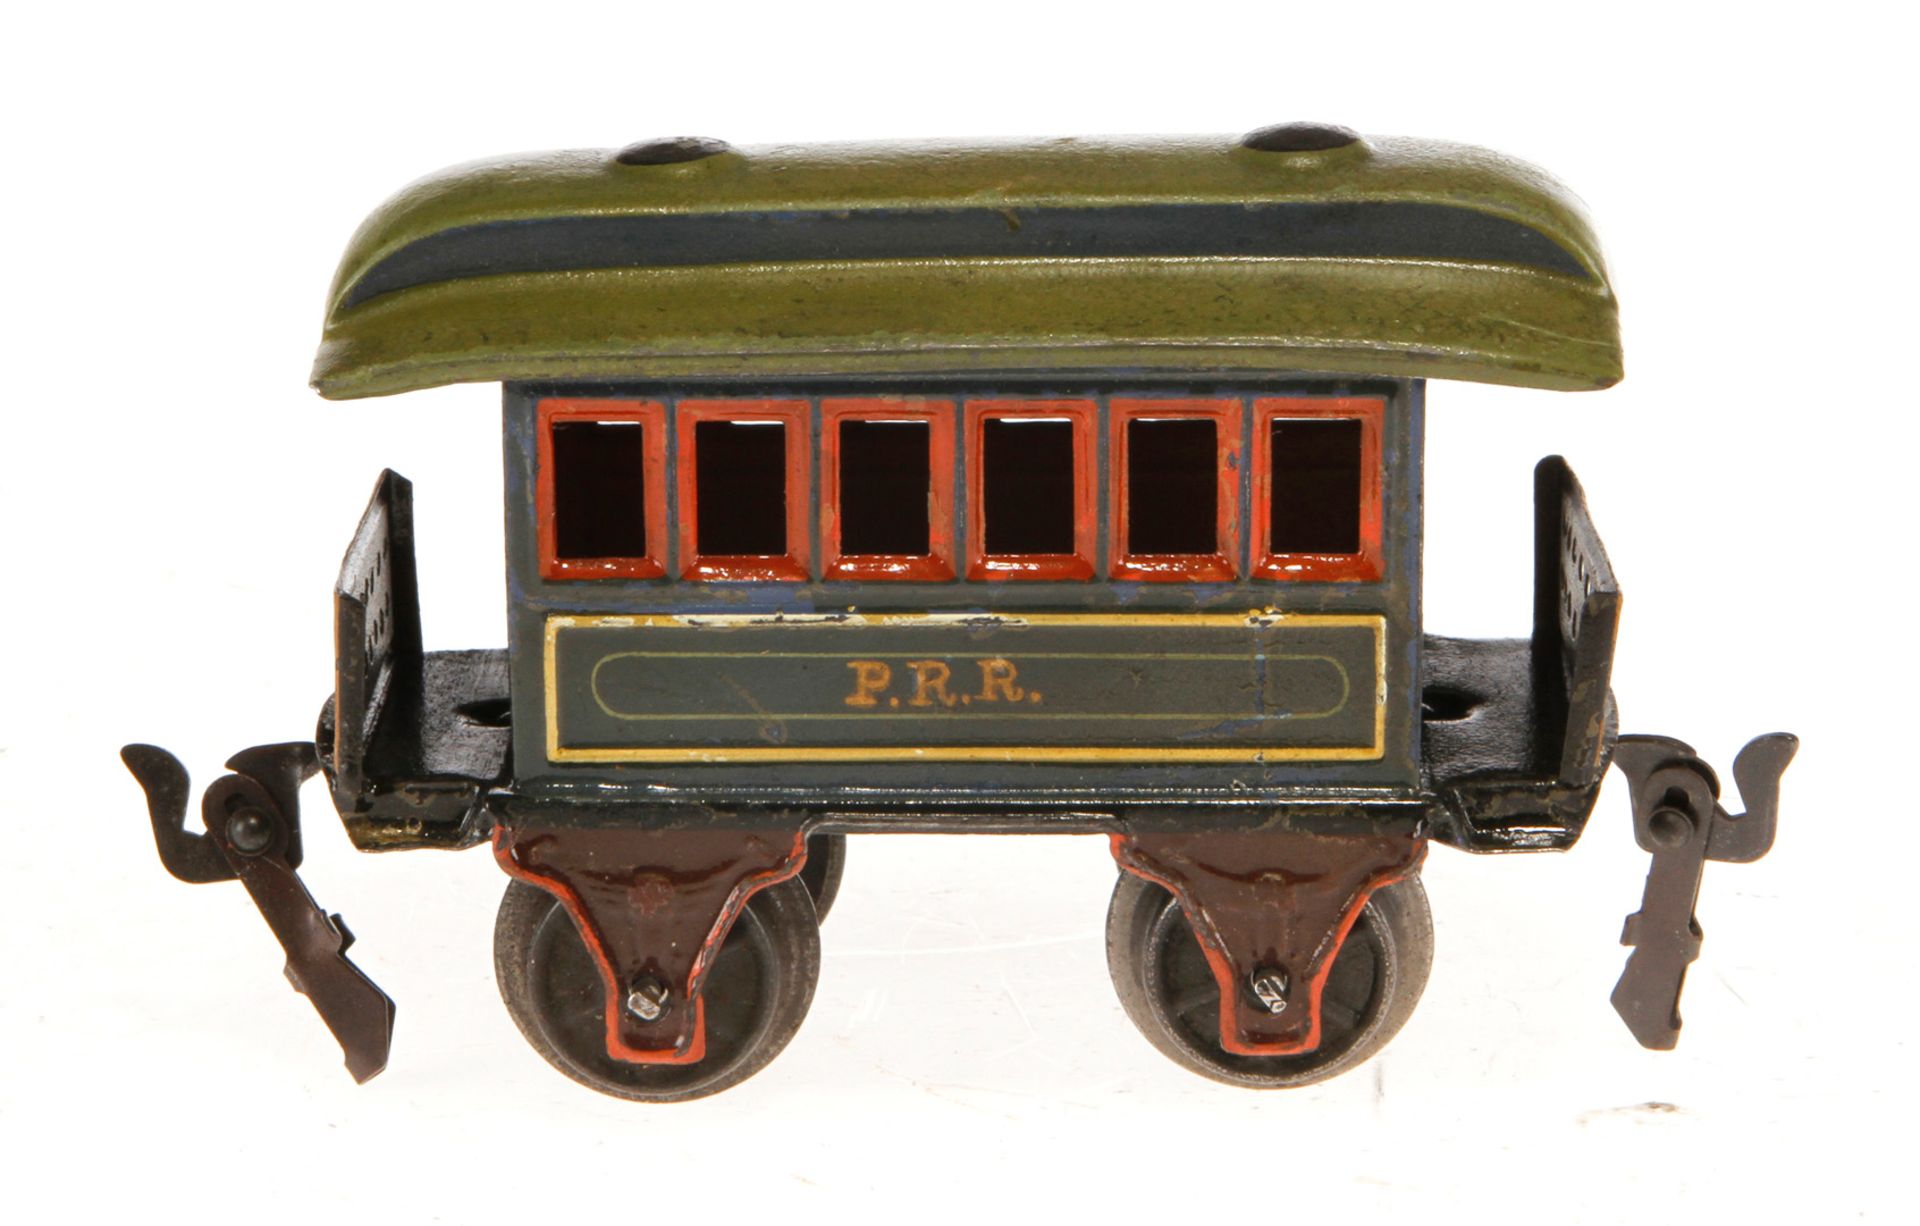 Märklin amerik. Personenwagen 1873 PRR, Spur 0, uralt, HL, mit 2 offenen Perrons, mit Lochgittern,